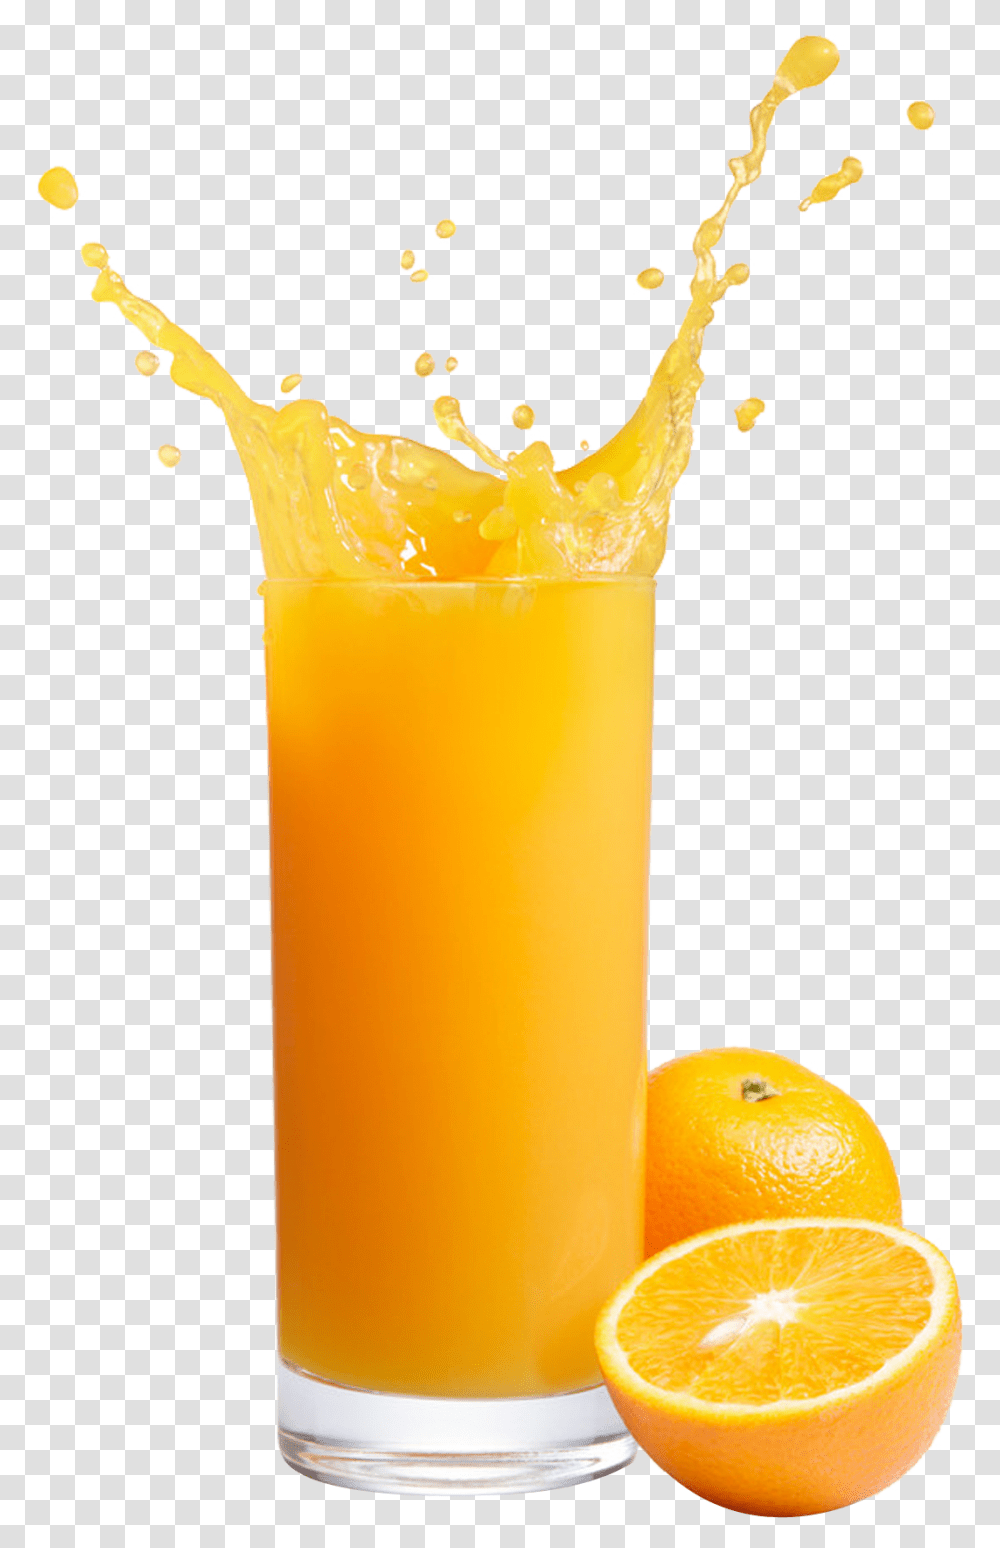 Orange Juice Images Free Download Background Orange Juice, Beverage, Drink, Citrus Fruit, Plant Transparent Png